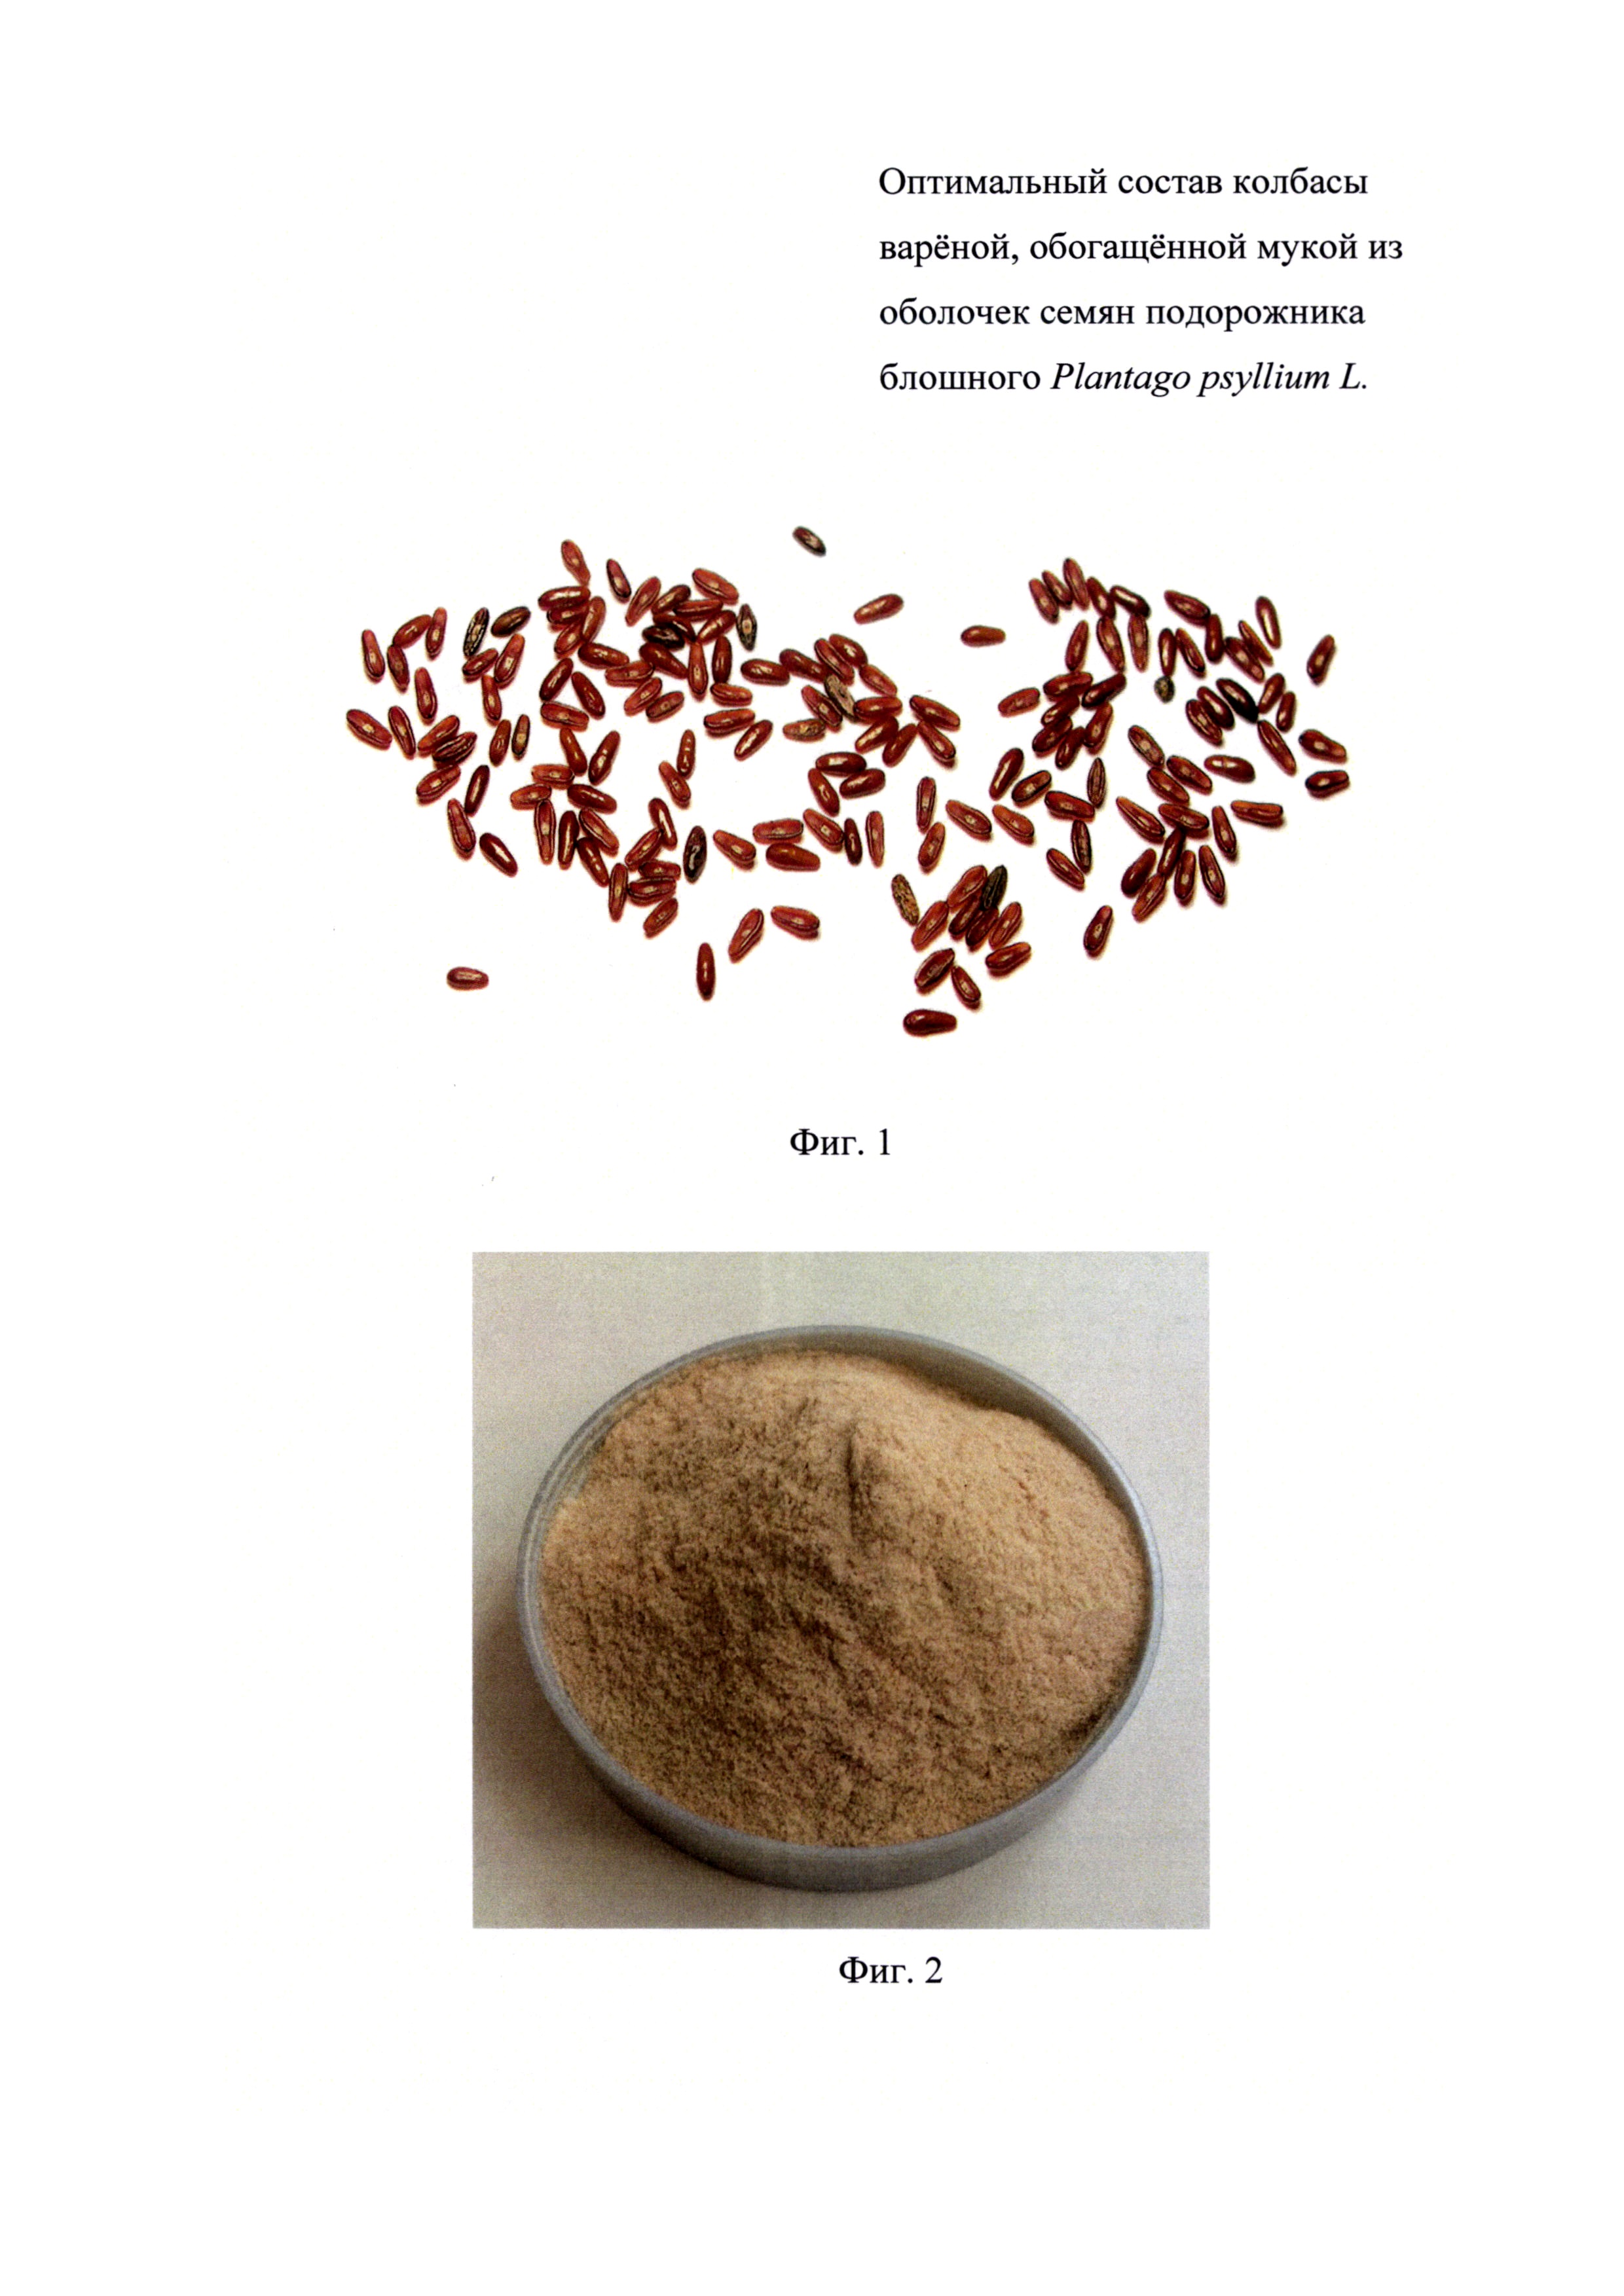 Оптимальный состав колбасы варёной, обогащённой мукой из оболочек семян подорожника блошного Plantago psyllium L.